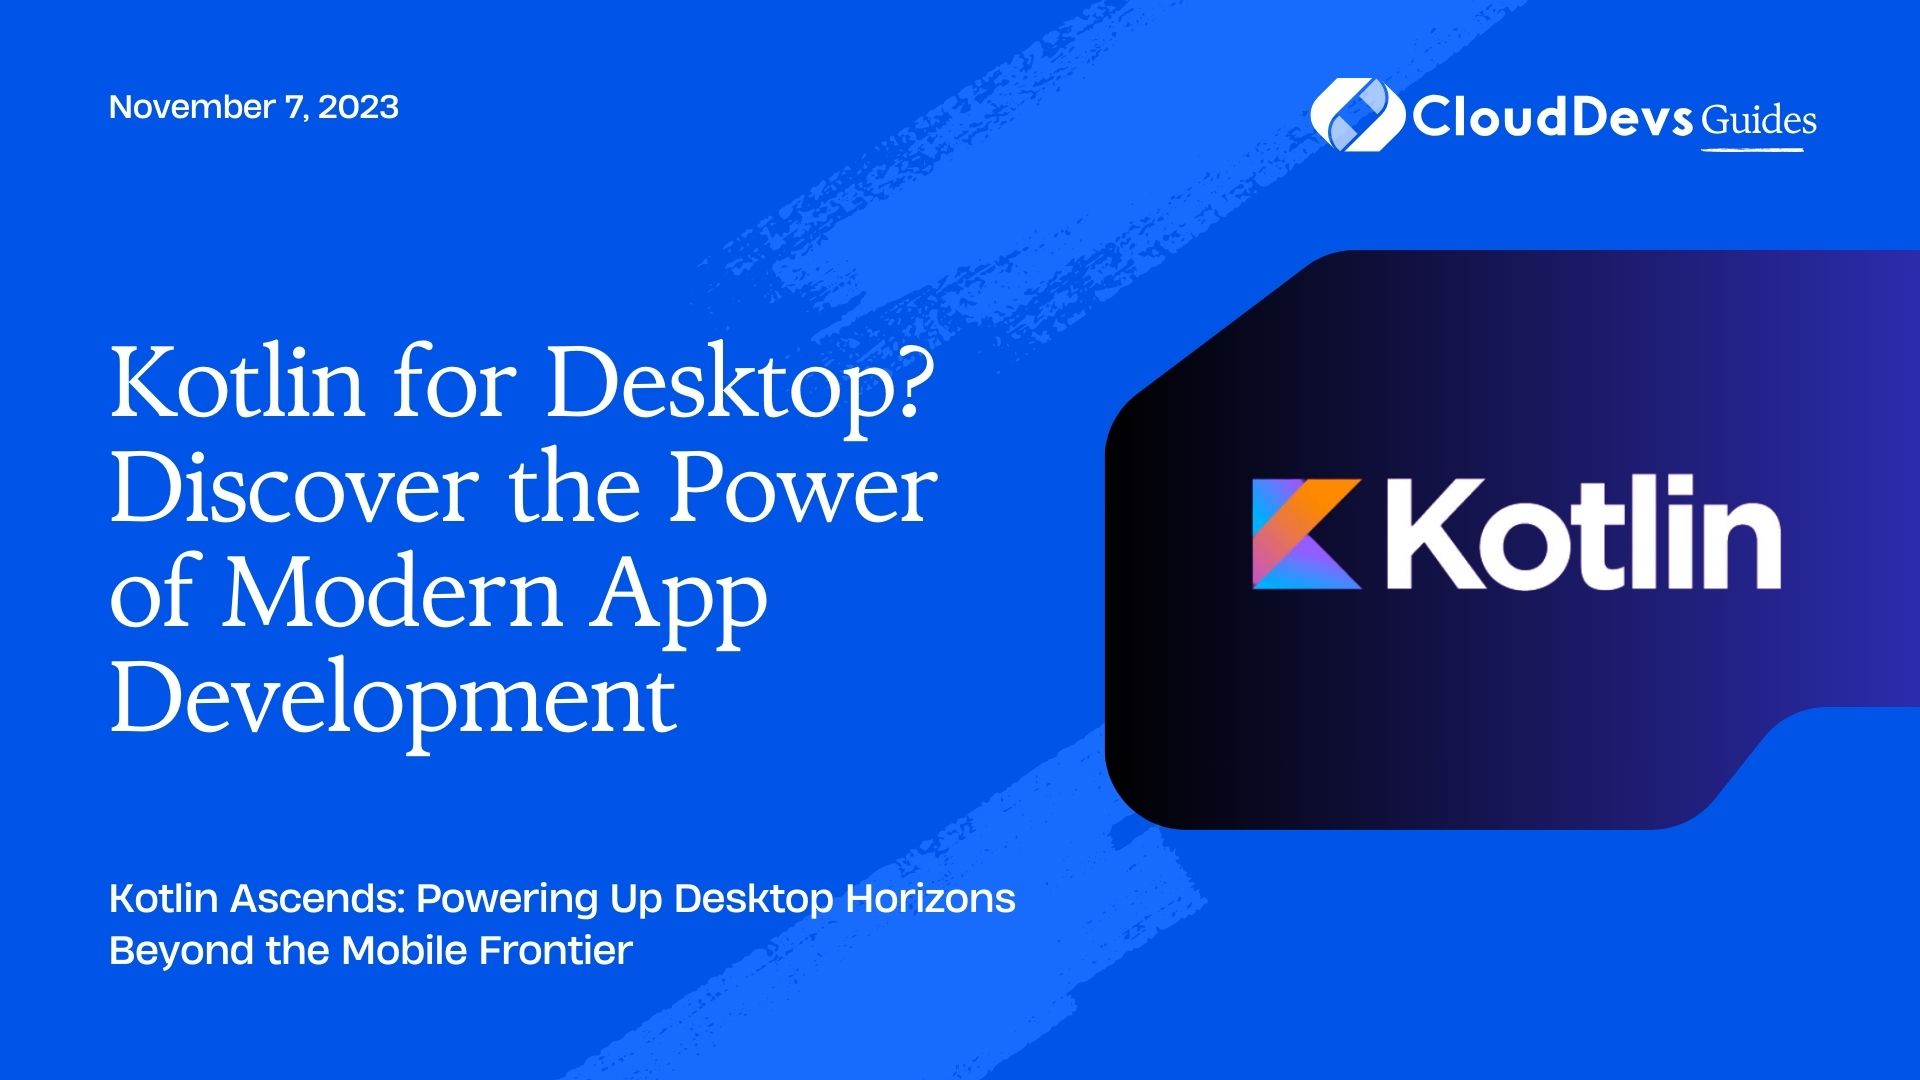 Kotlin for Desktop? Discover the Power of Modern App Development